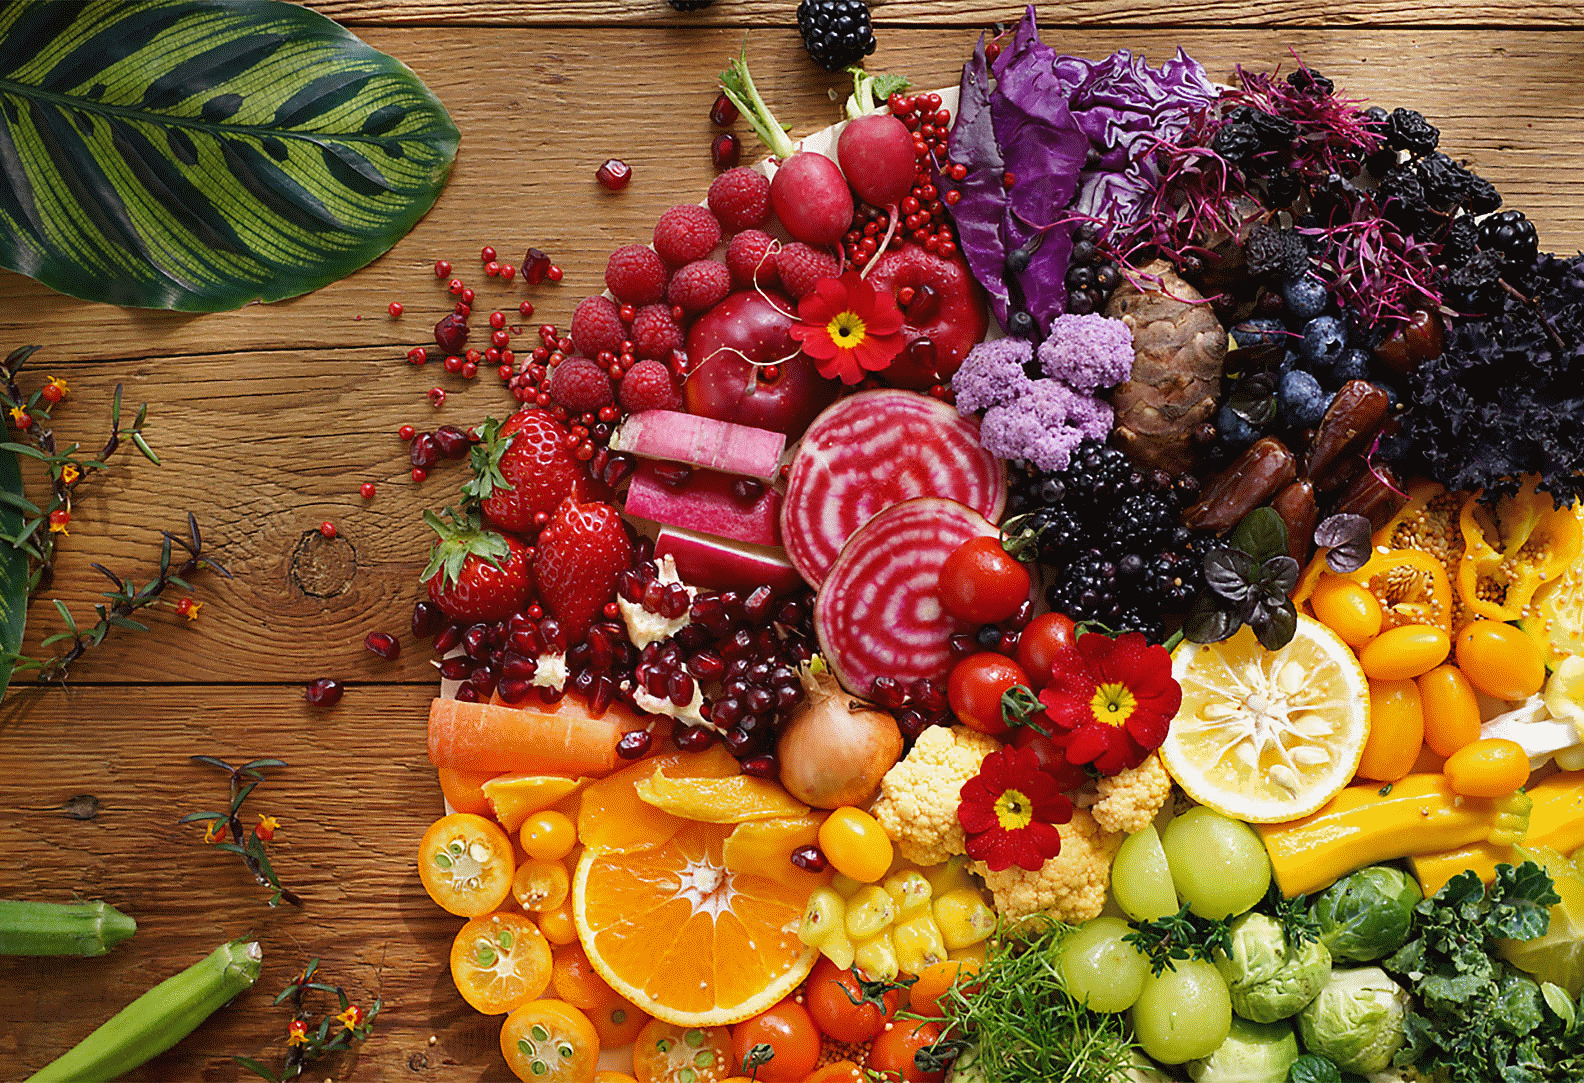 Image de légumes et de fruits colorés capturée à l'aide de l'objectif, avec une haute résolution dans les moindres recoins